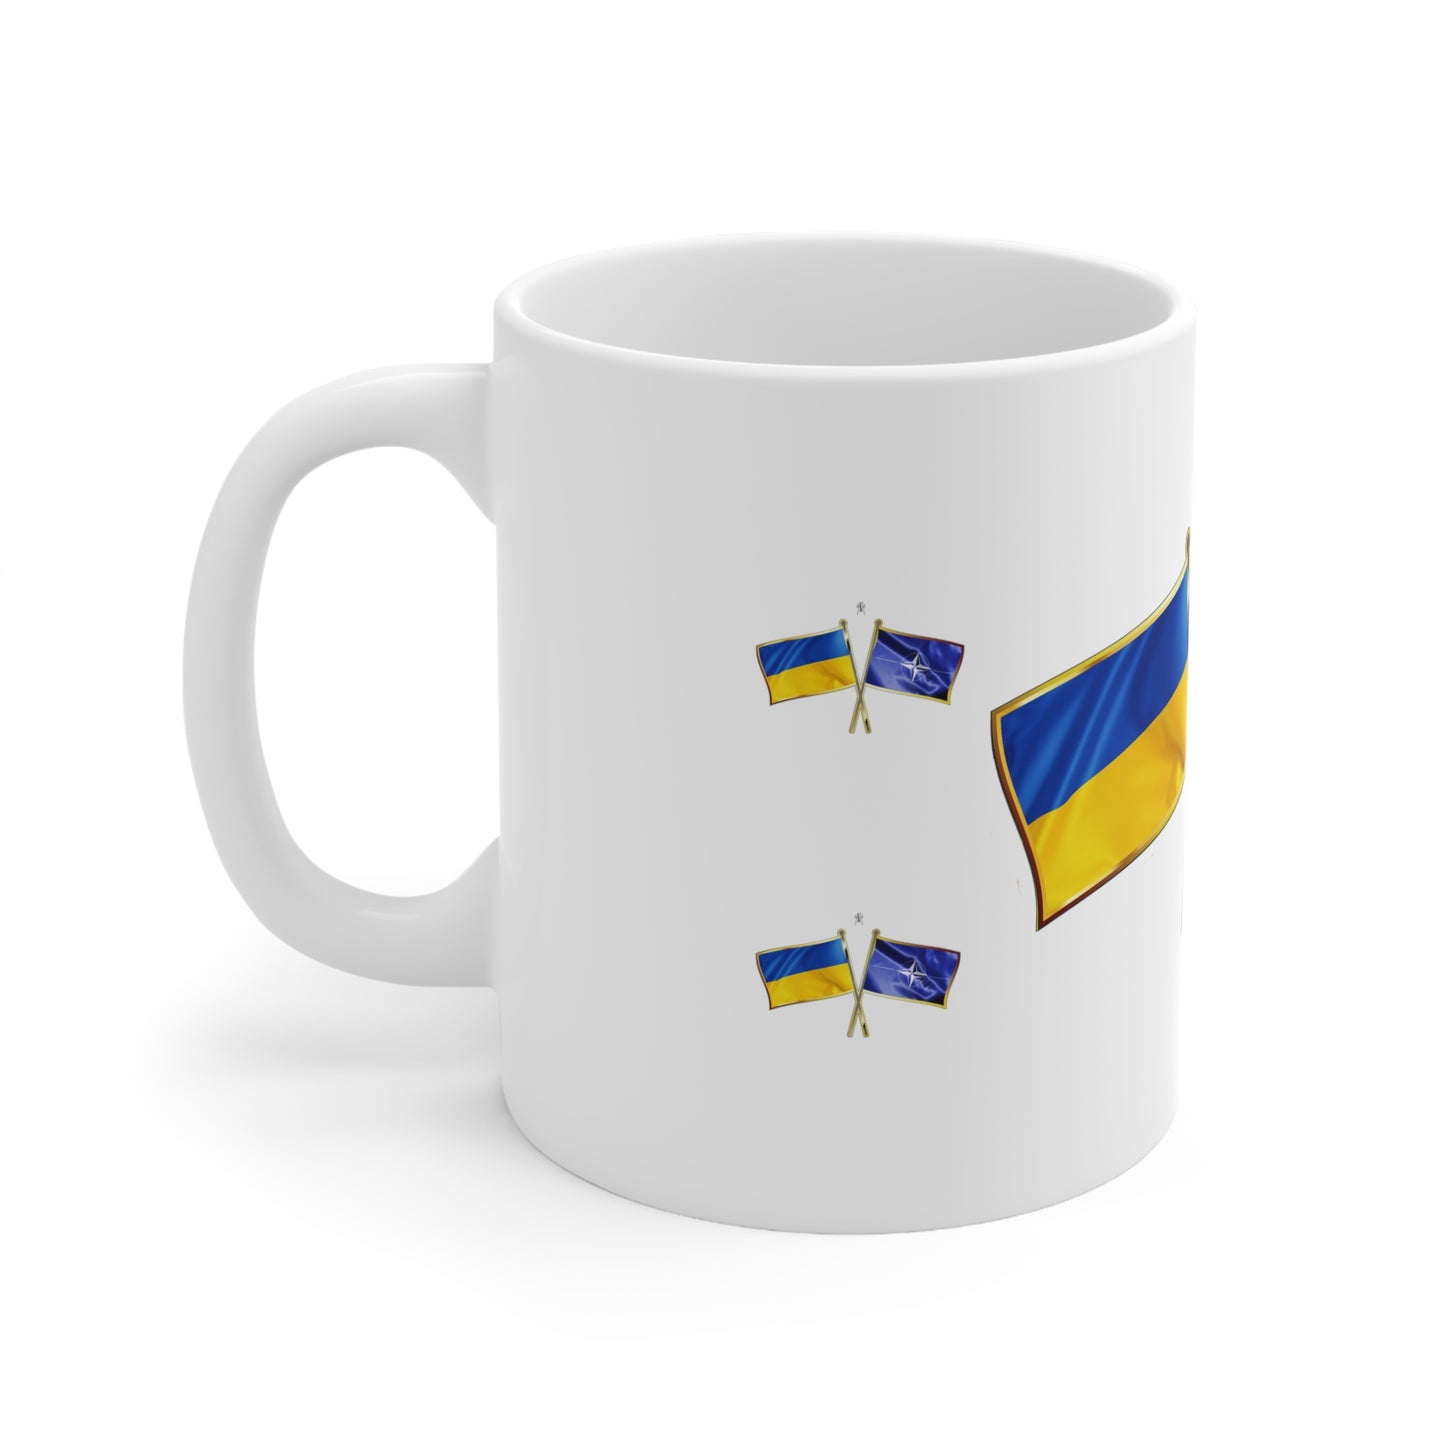 Ukraine 4 NATO Supporter Mug